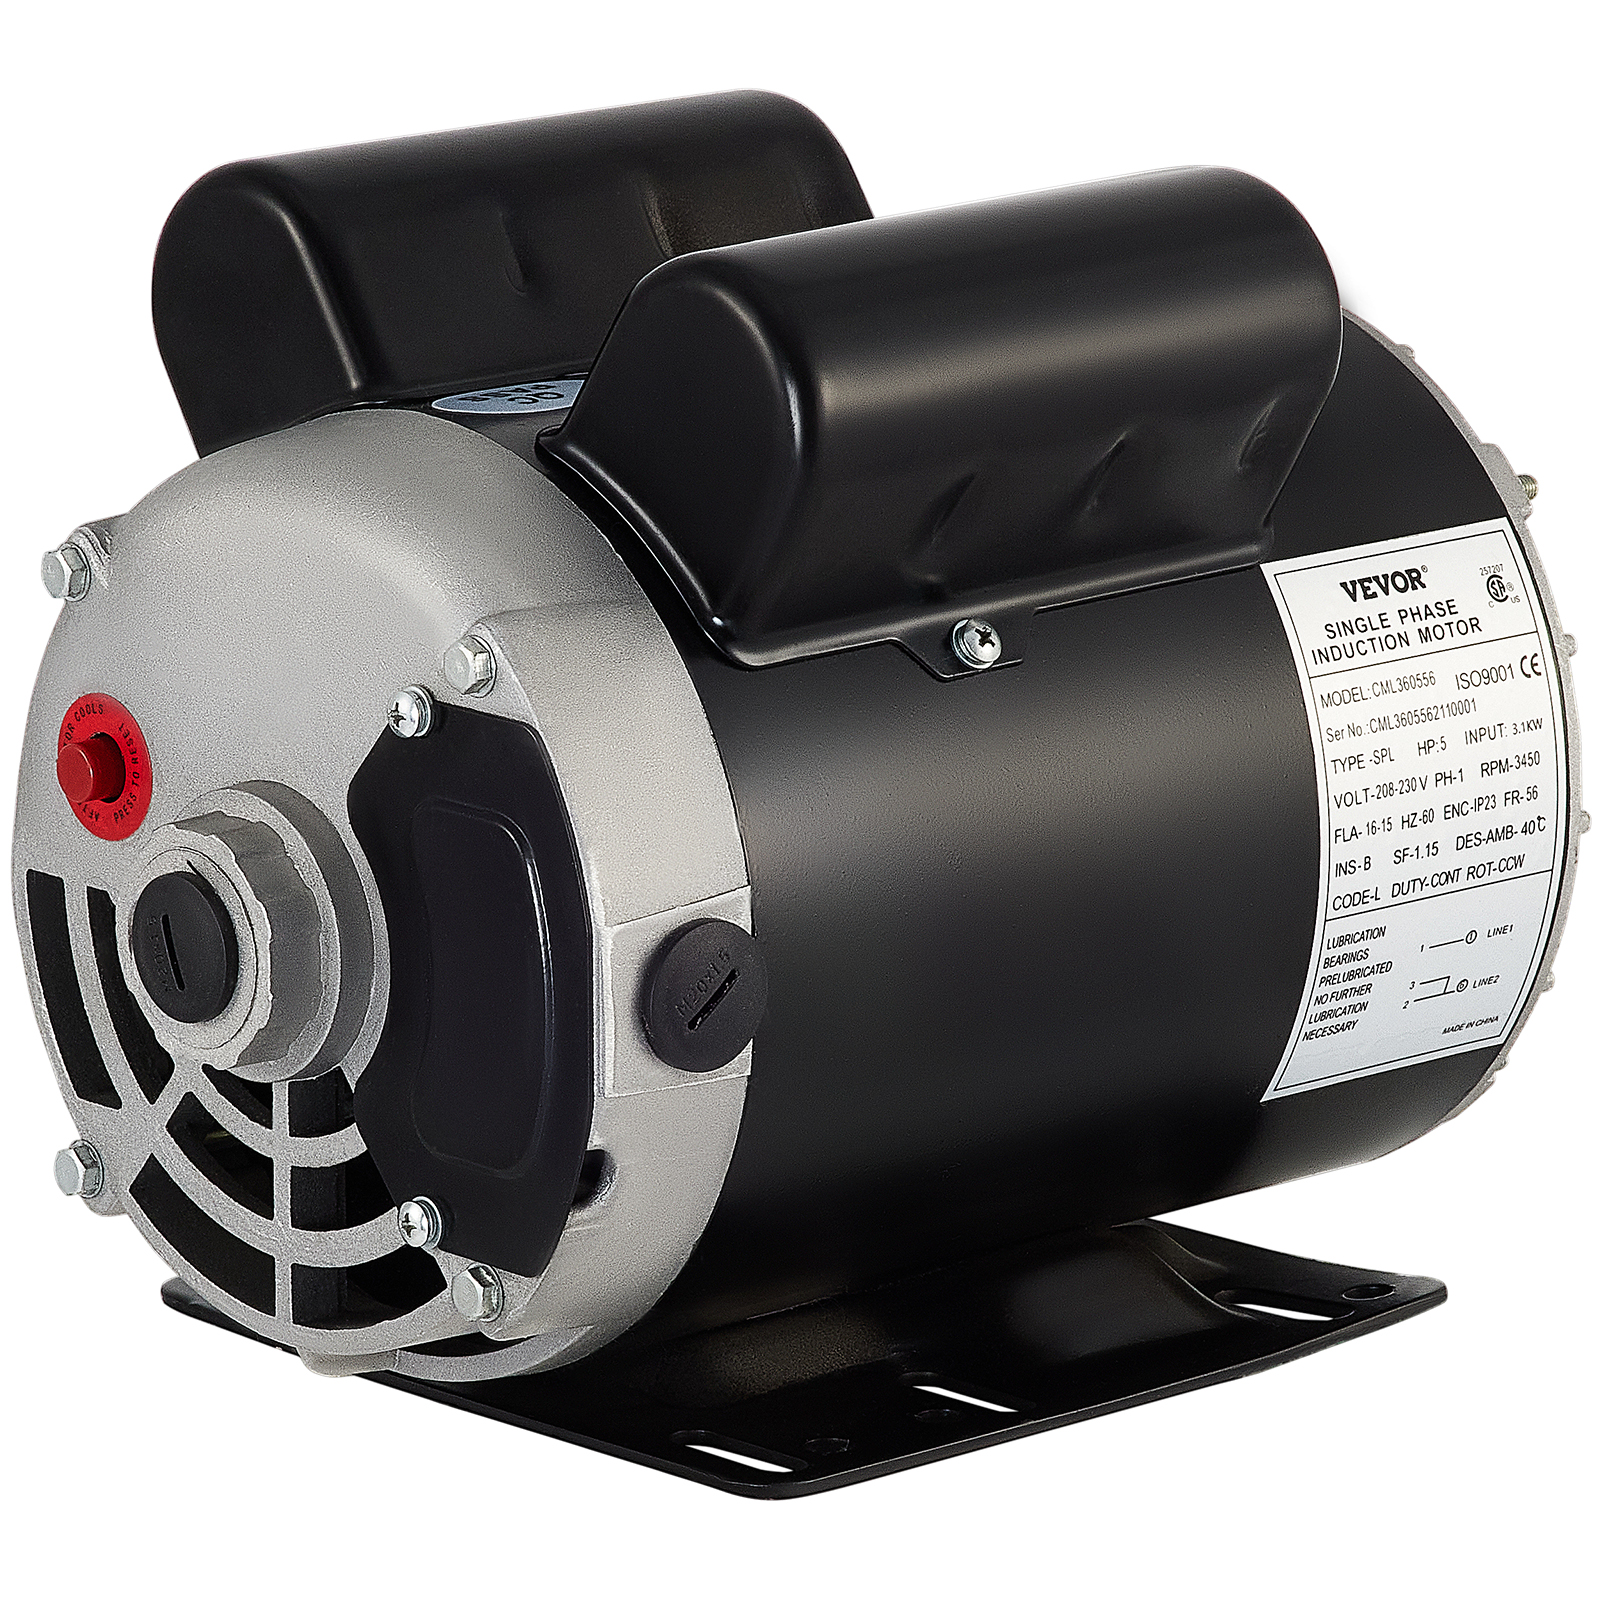 VEVOR Air Compressor Electric Motor 5hp 3450 rpm, 208-230 volt 3.1 kw  Single Phase 56 Frame 5/8